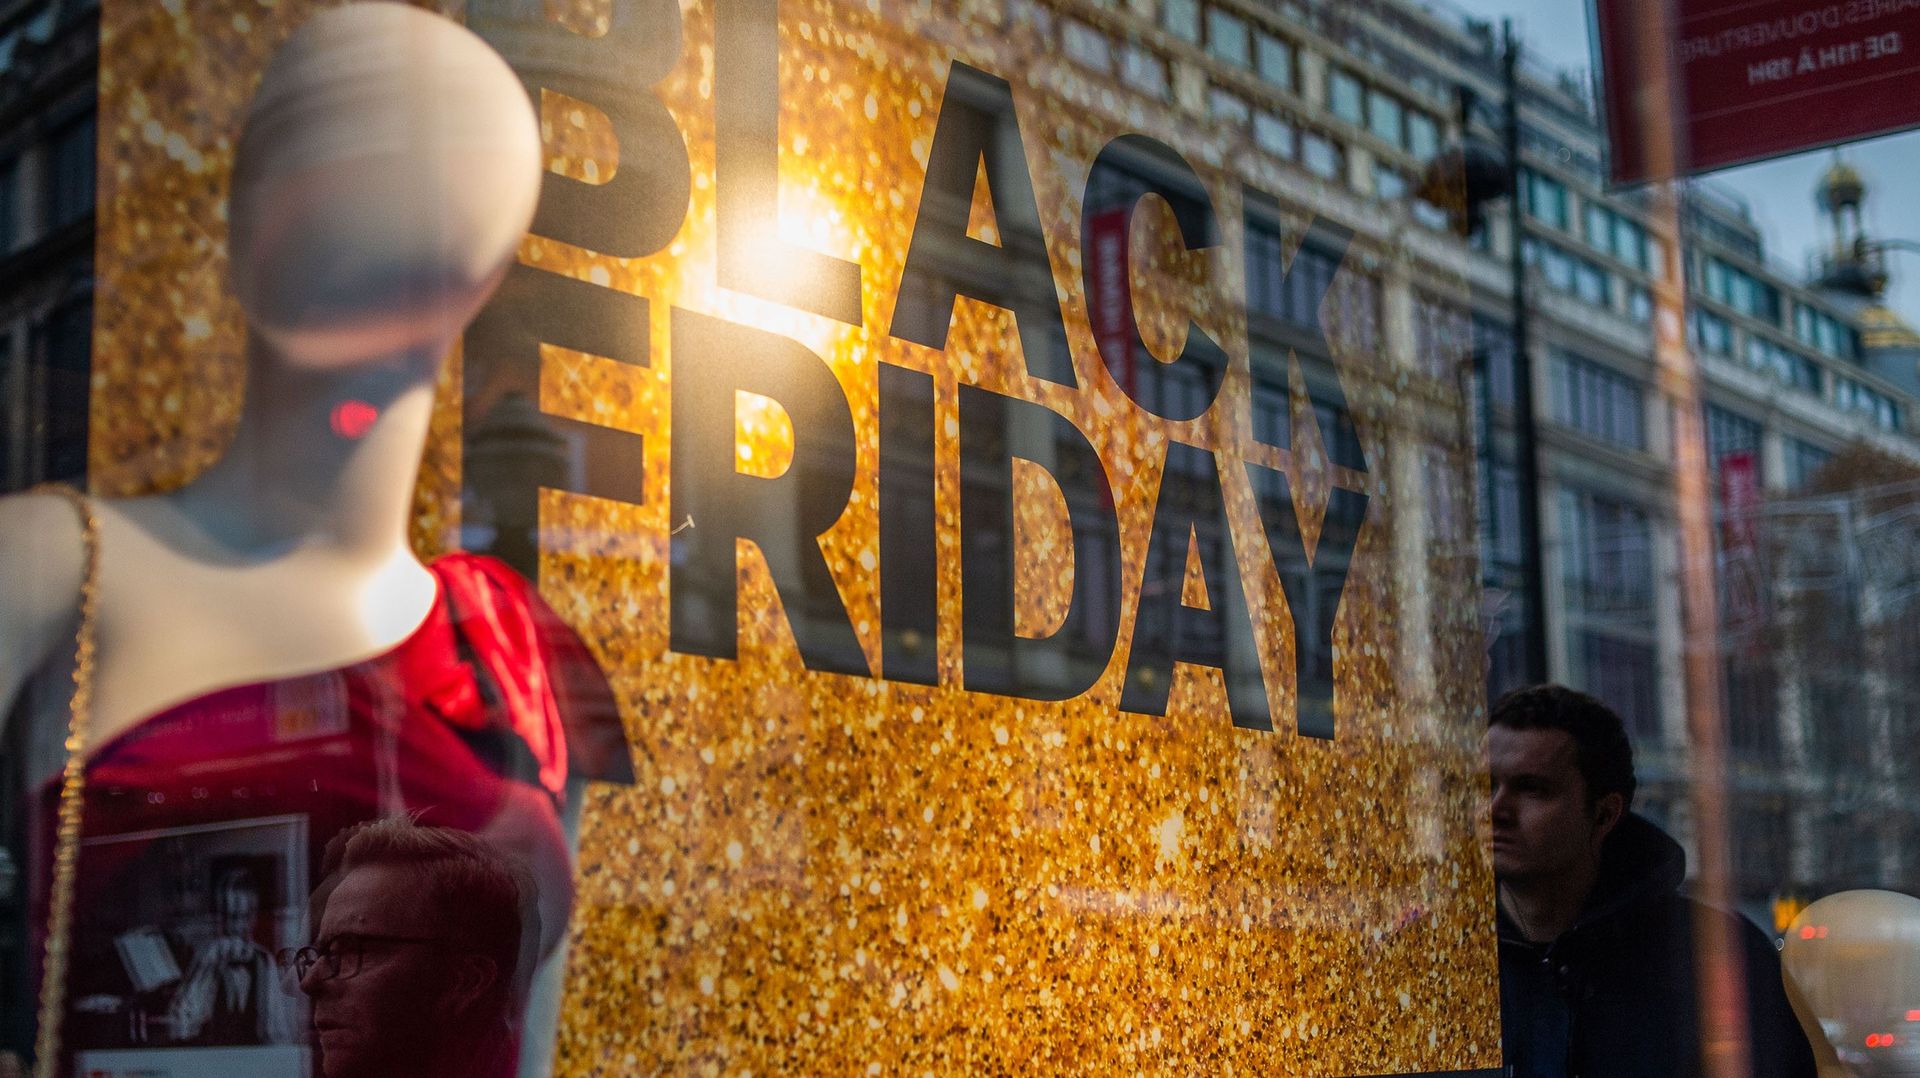 Rien que sur internet, les ventes devraient atteindre 1,7 milliard d'euros sur les quatre jours allant du "Black Friday" (vendredi 29 novembre) au "Cyber Monday" (le lundi qui suit, davantage centré sur des promotions en ligne)